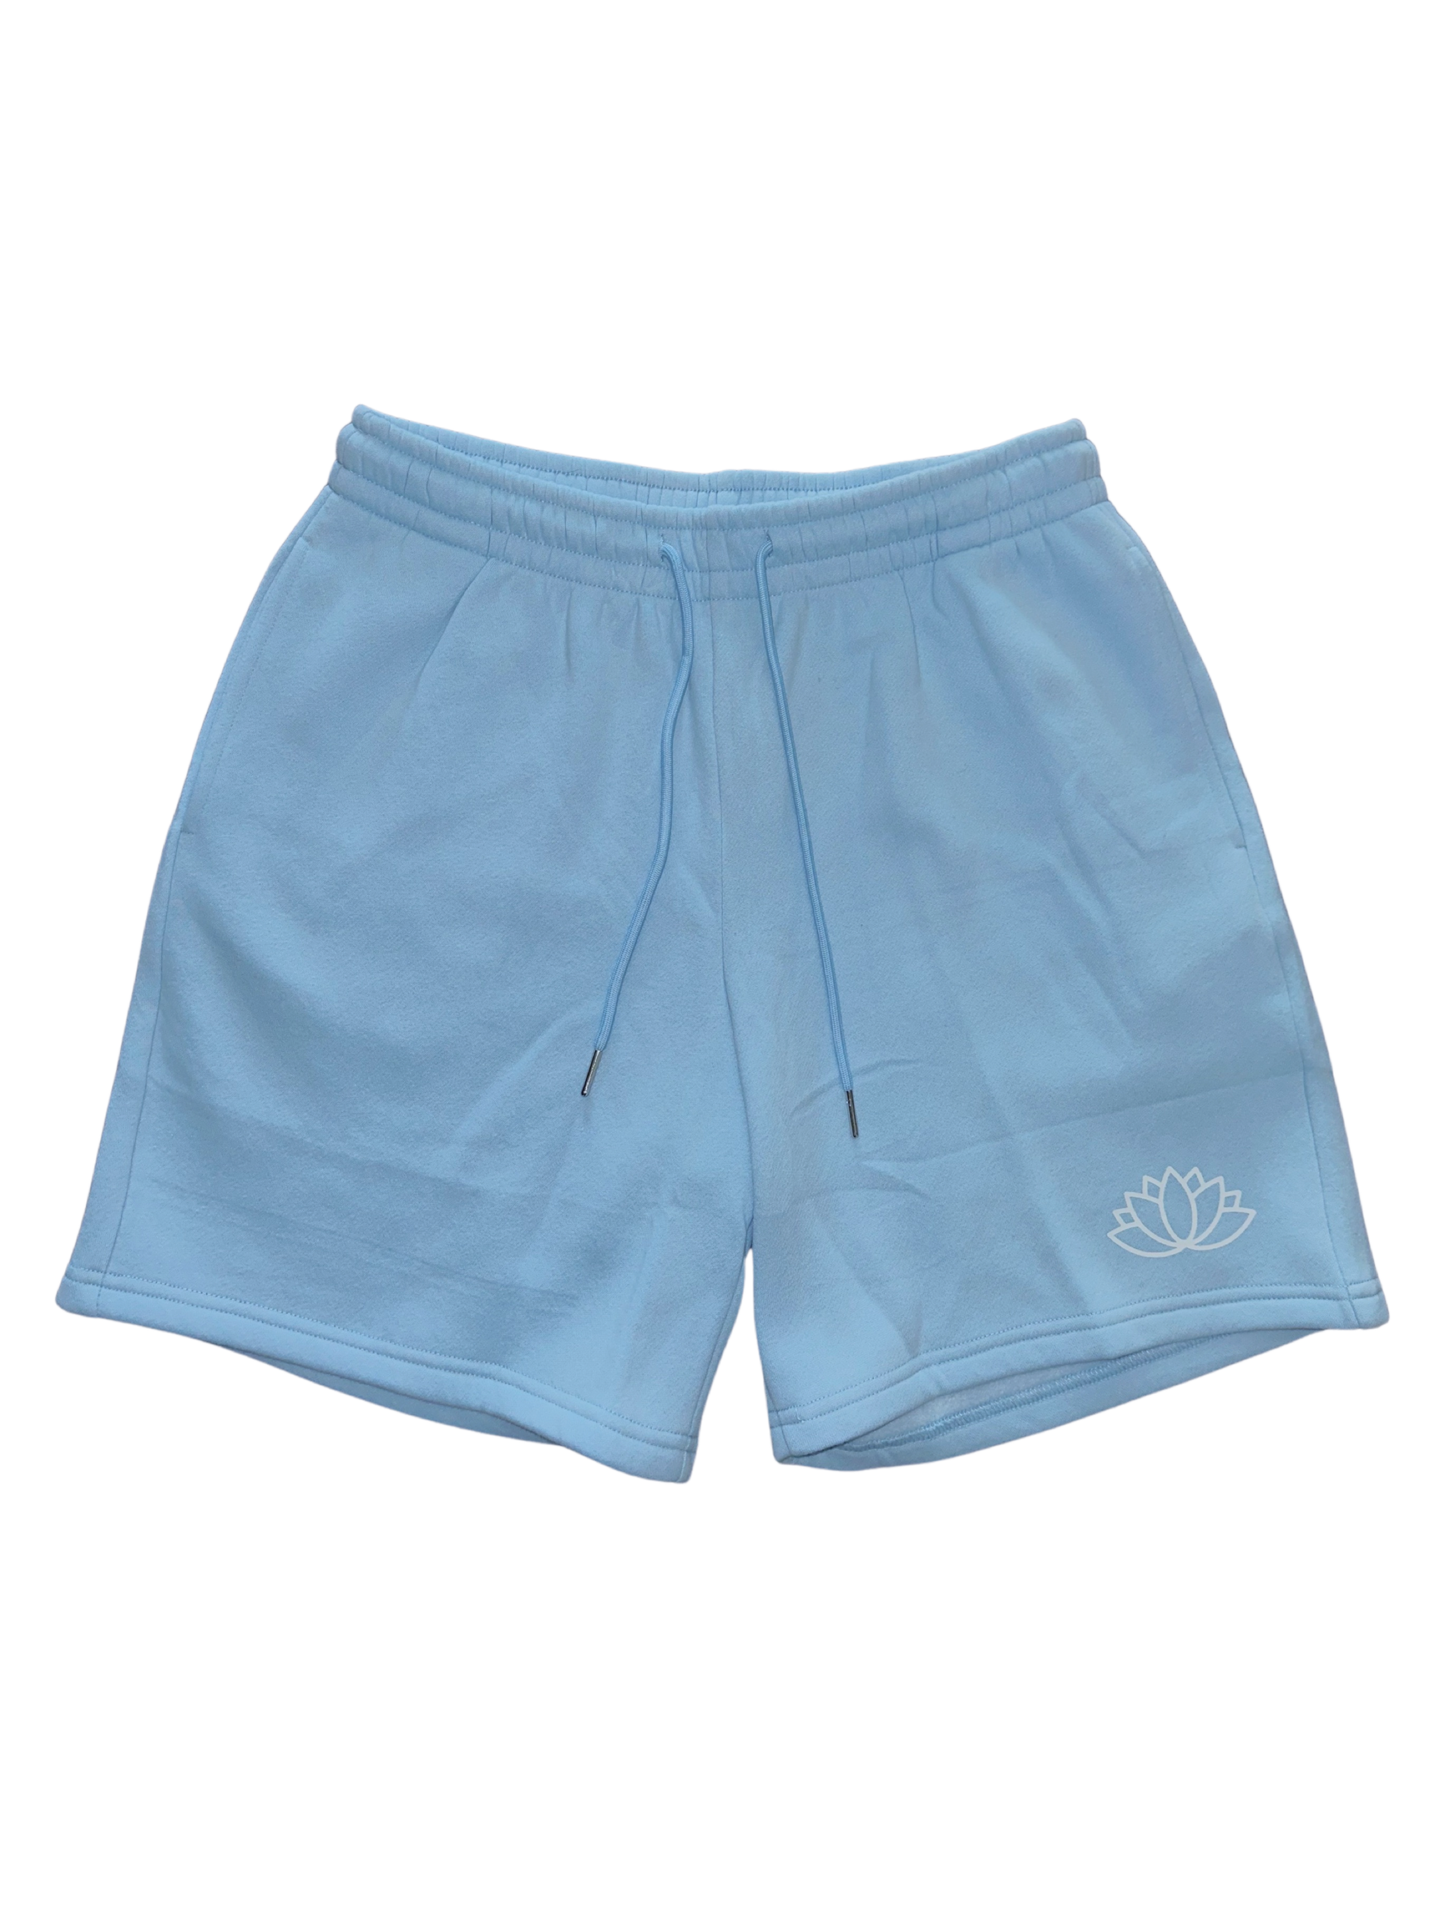 Blue Lotus Lounge Shorts